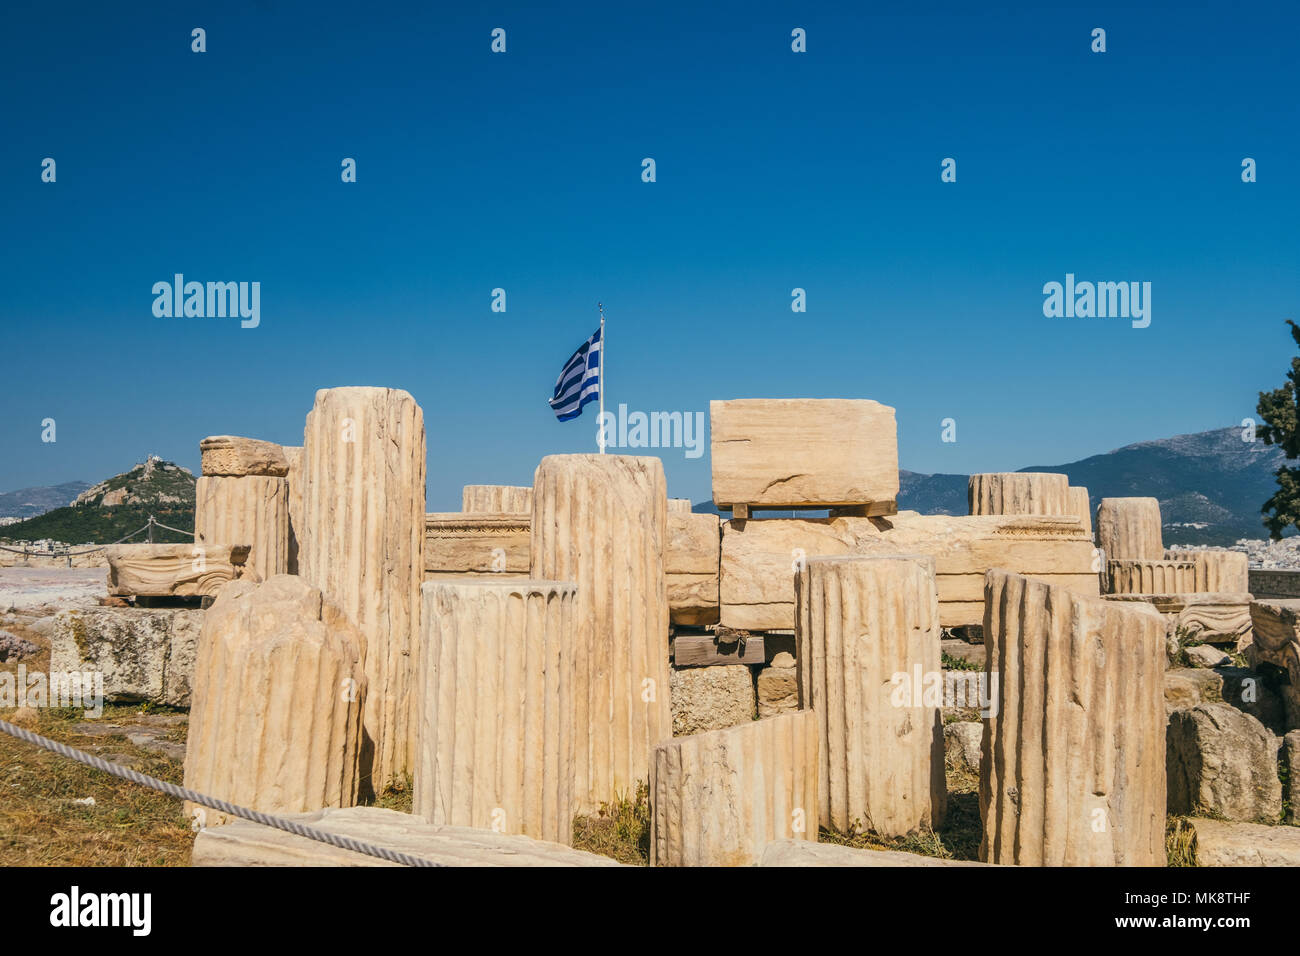 Bandera griega en la Acrópolis, con antiguas columnas griegas en primer plano Foto de stock